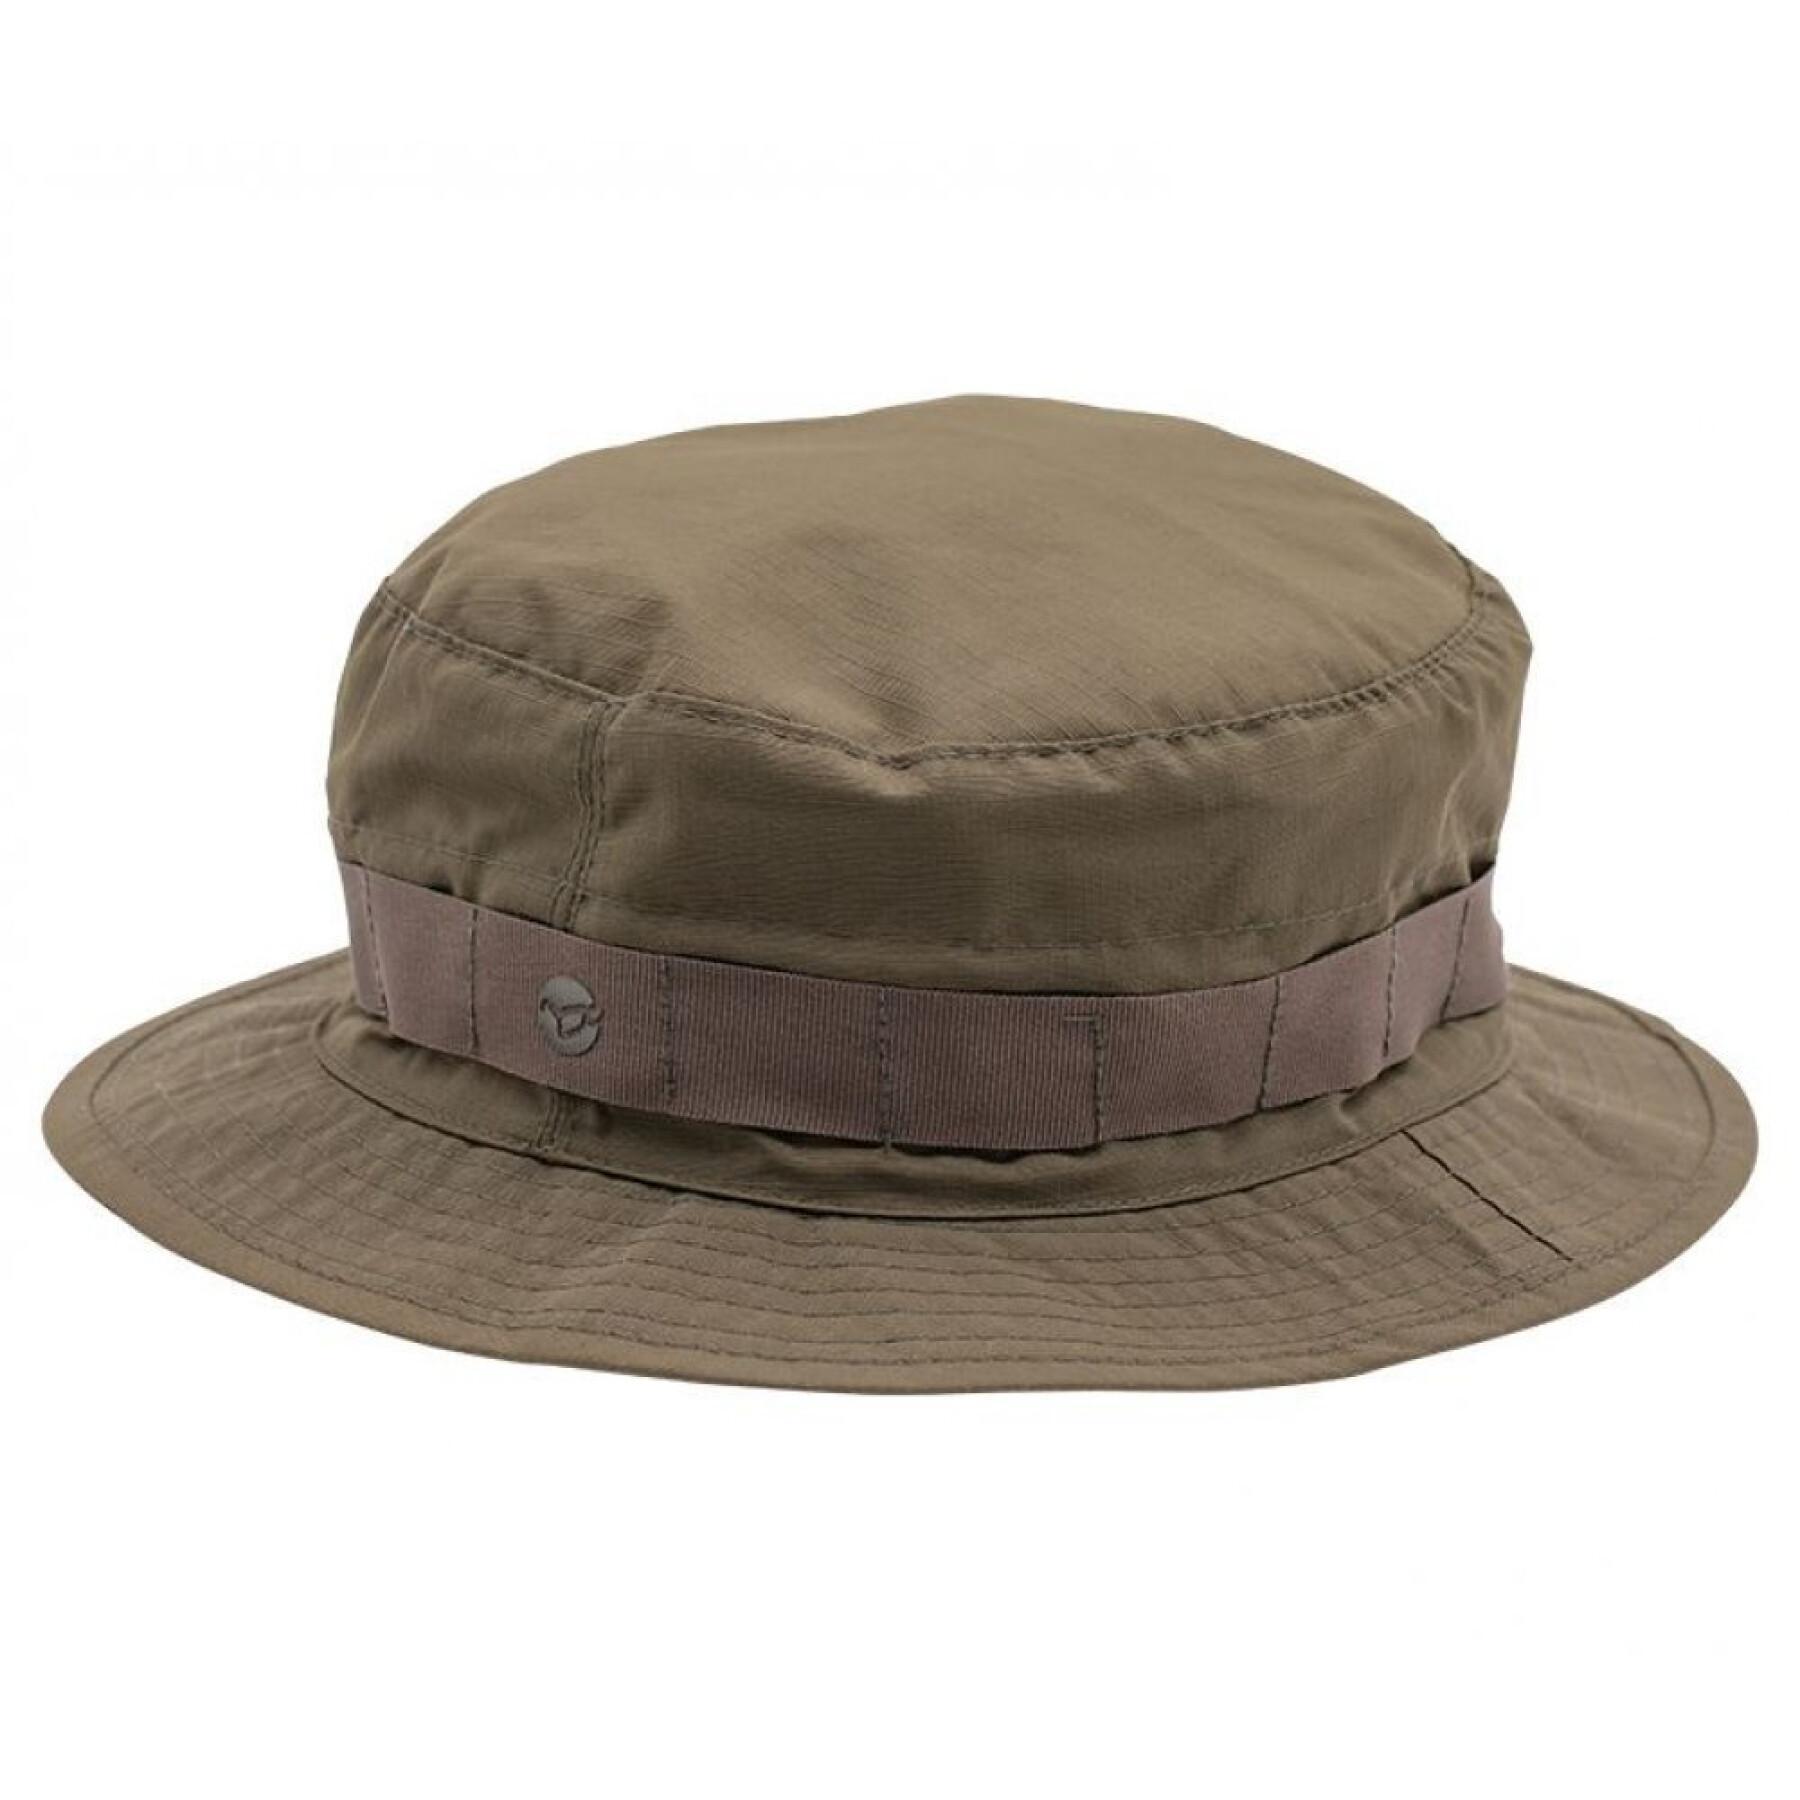 Confezione da 6 cappelli impermeabili Korda kore fleece